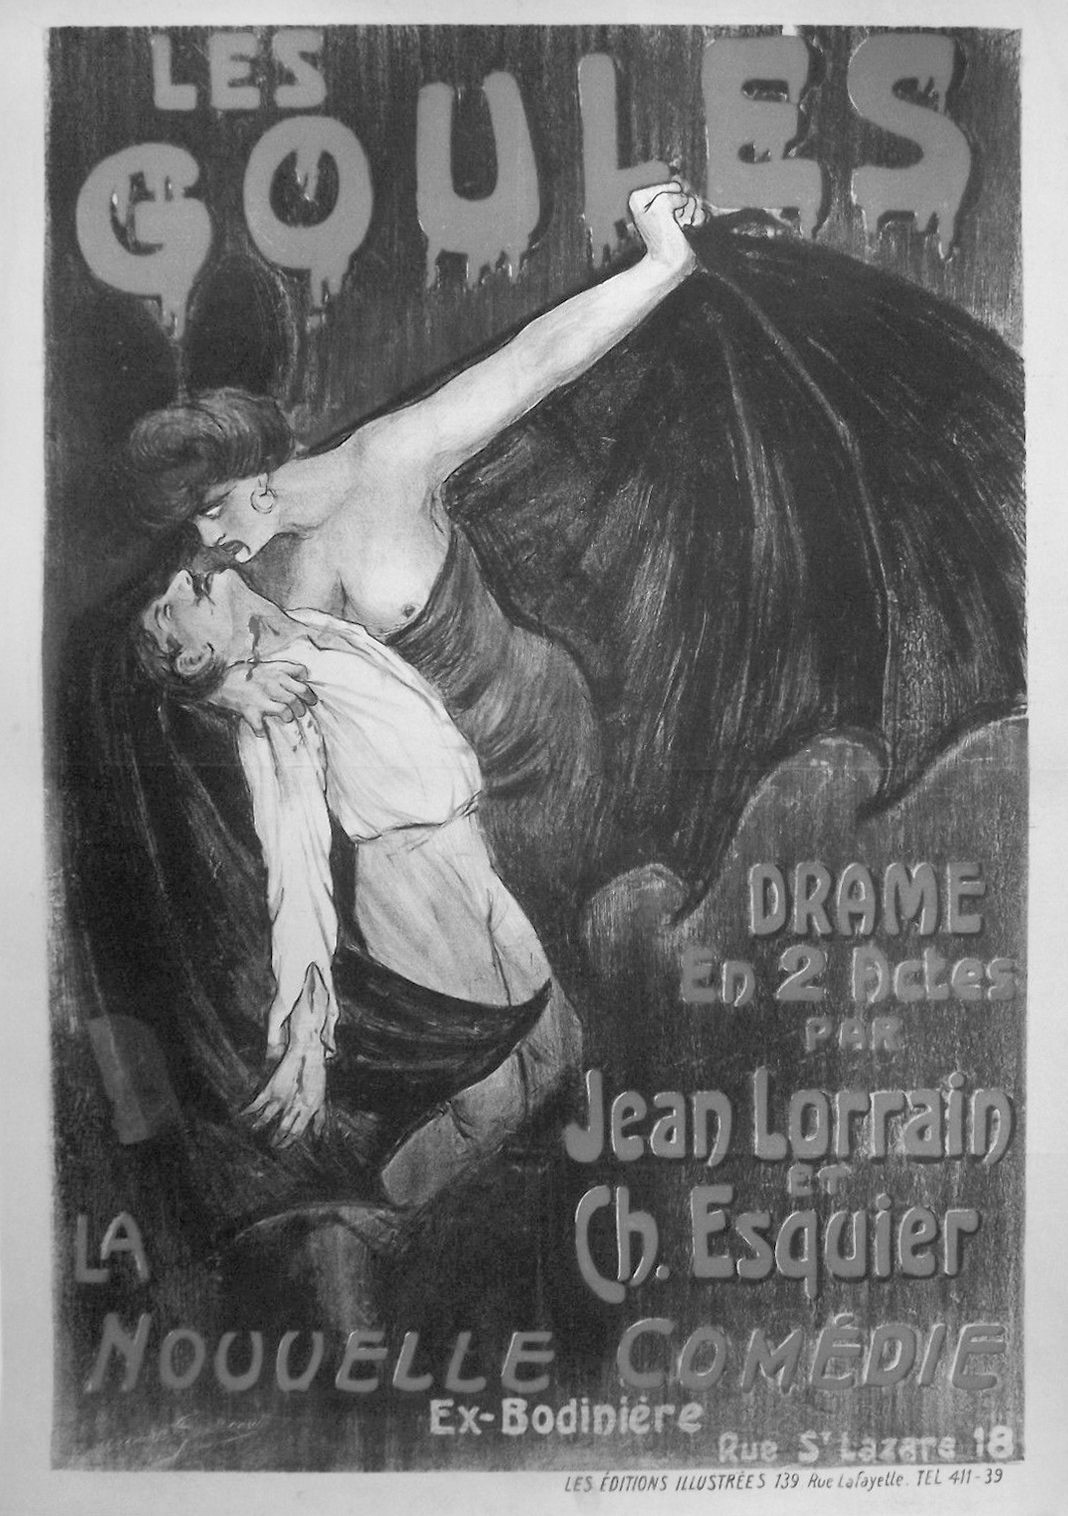 Affiche du Grand-Guignol,
Les Goules de Jean Lorrain et Ch. Esquier, s.d.